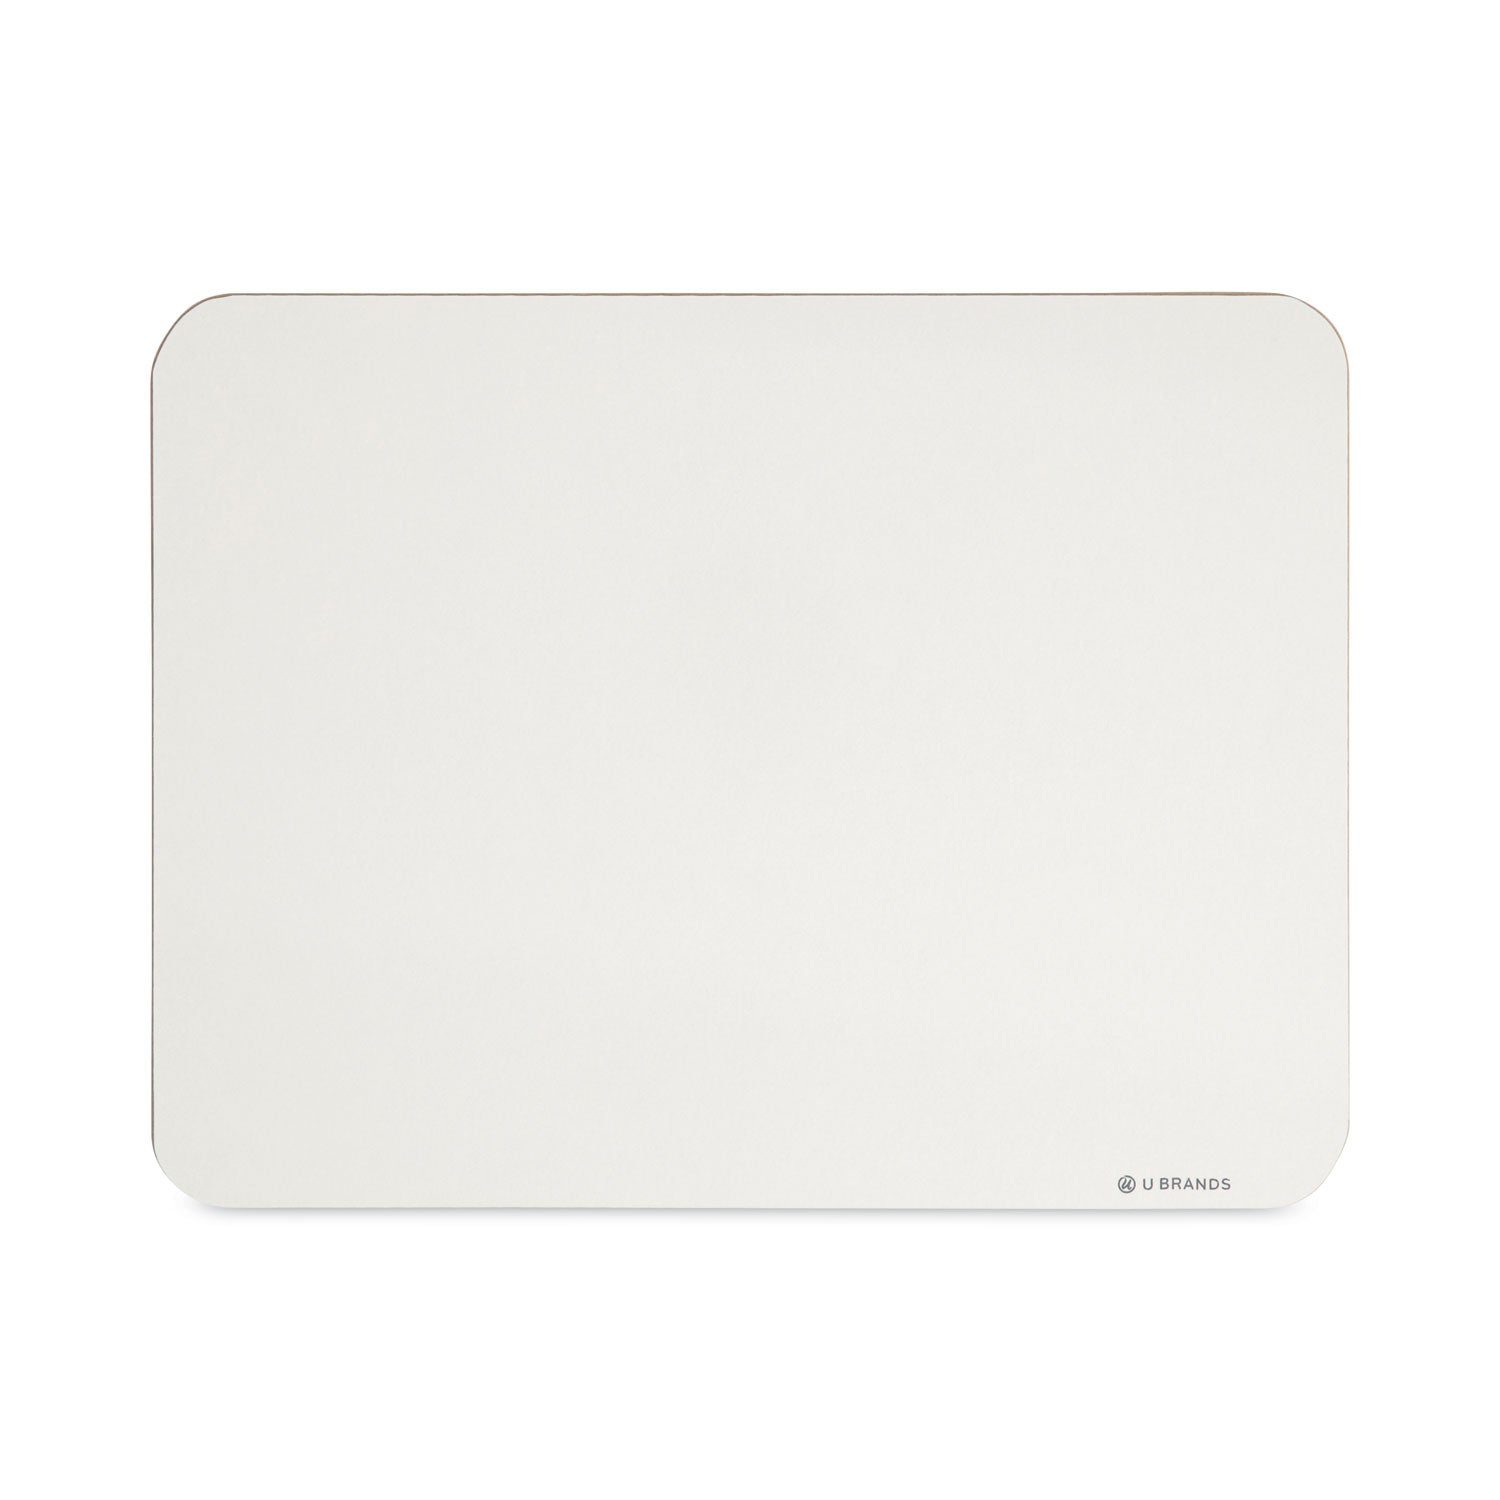 single-sided-dry-erase-lap-board-12-x-9-white-surface_ubr3135u0001 - 5